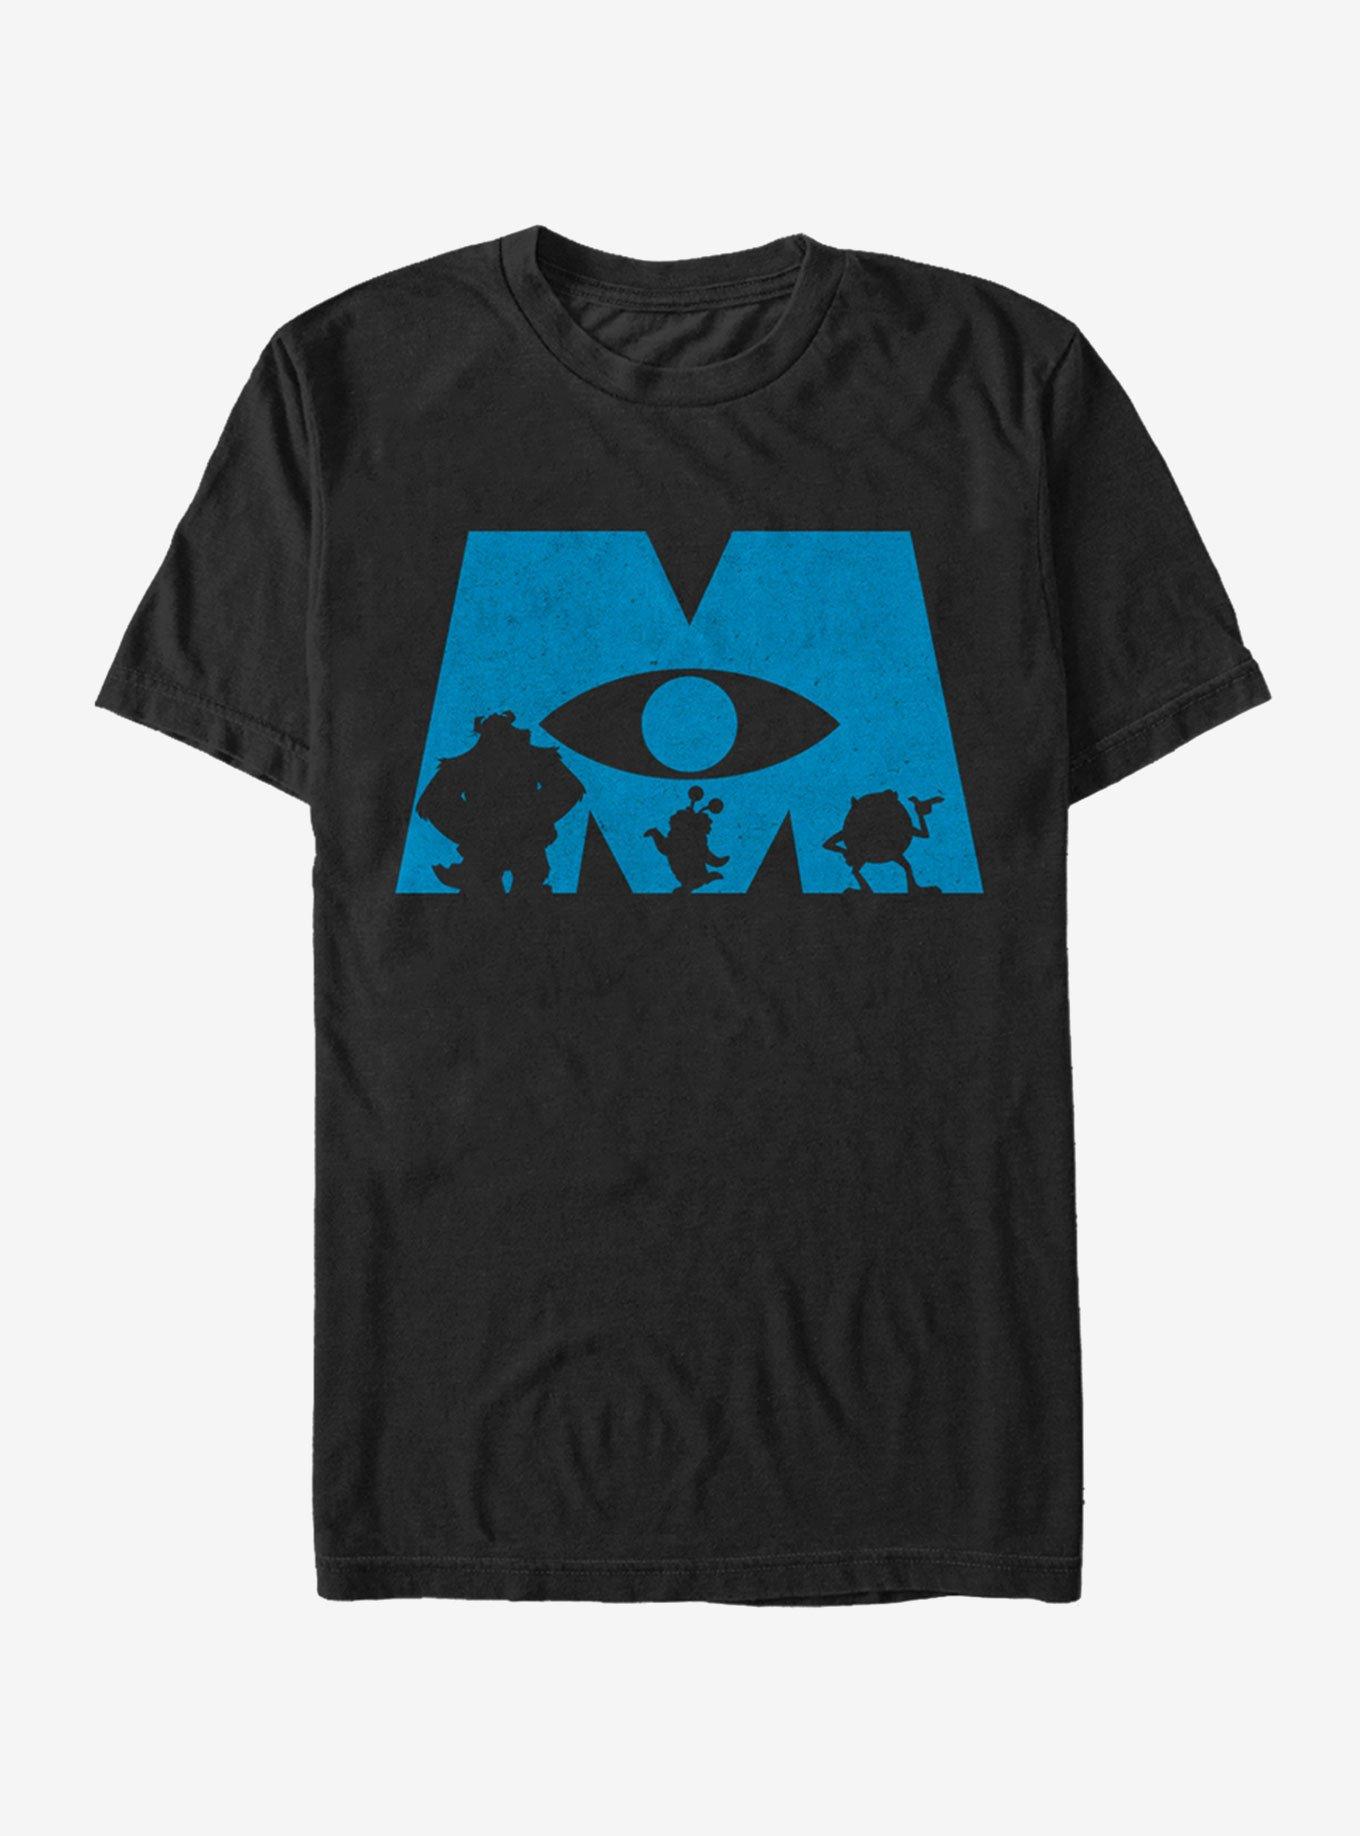 Disney Pixar Monsters, Inc. Logo Silhouette T-Shirt, BLACK, hi-res